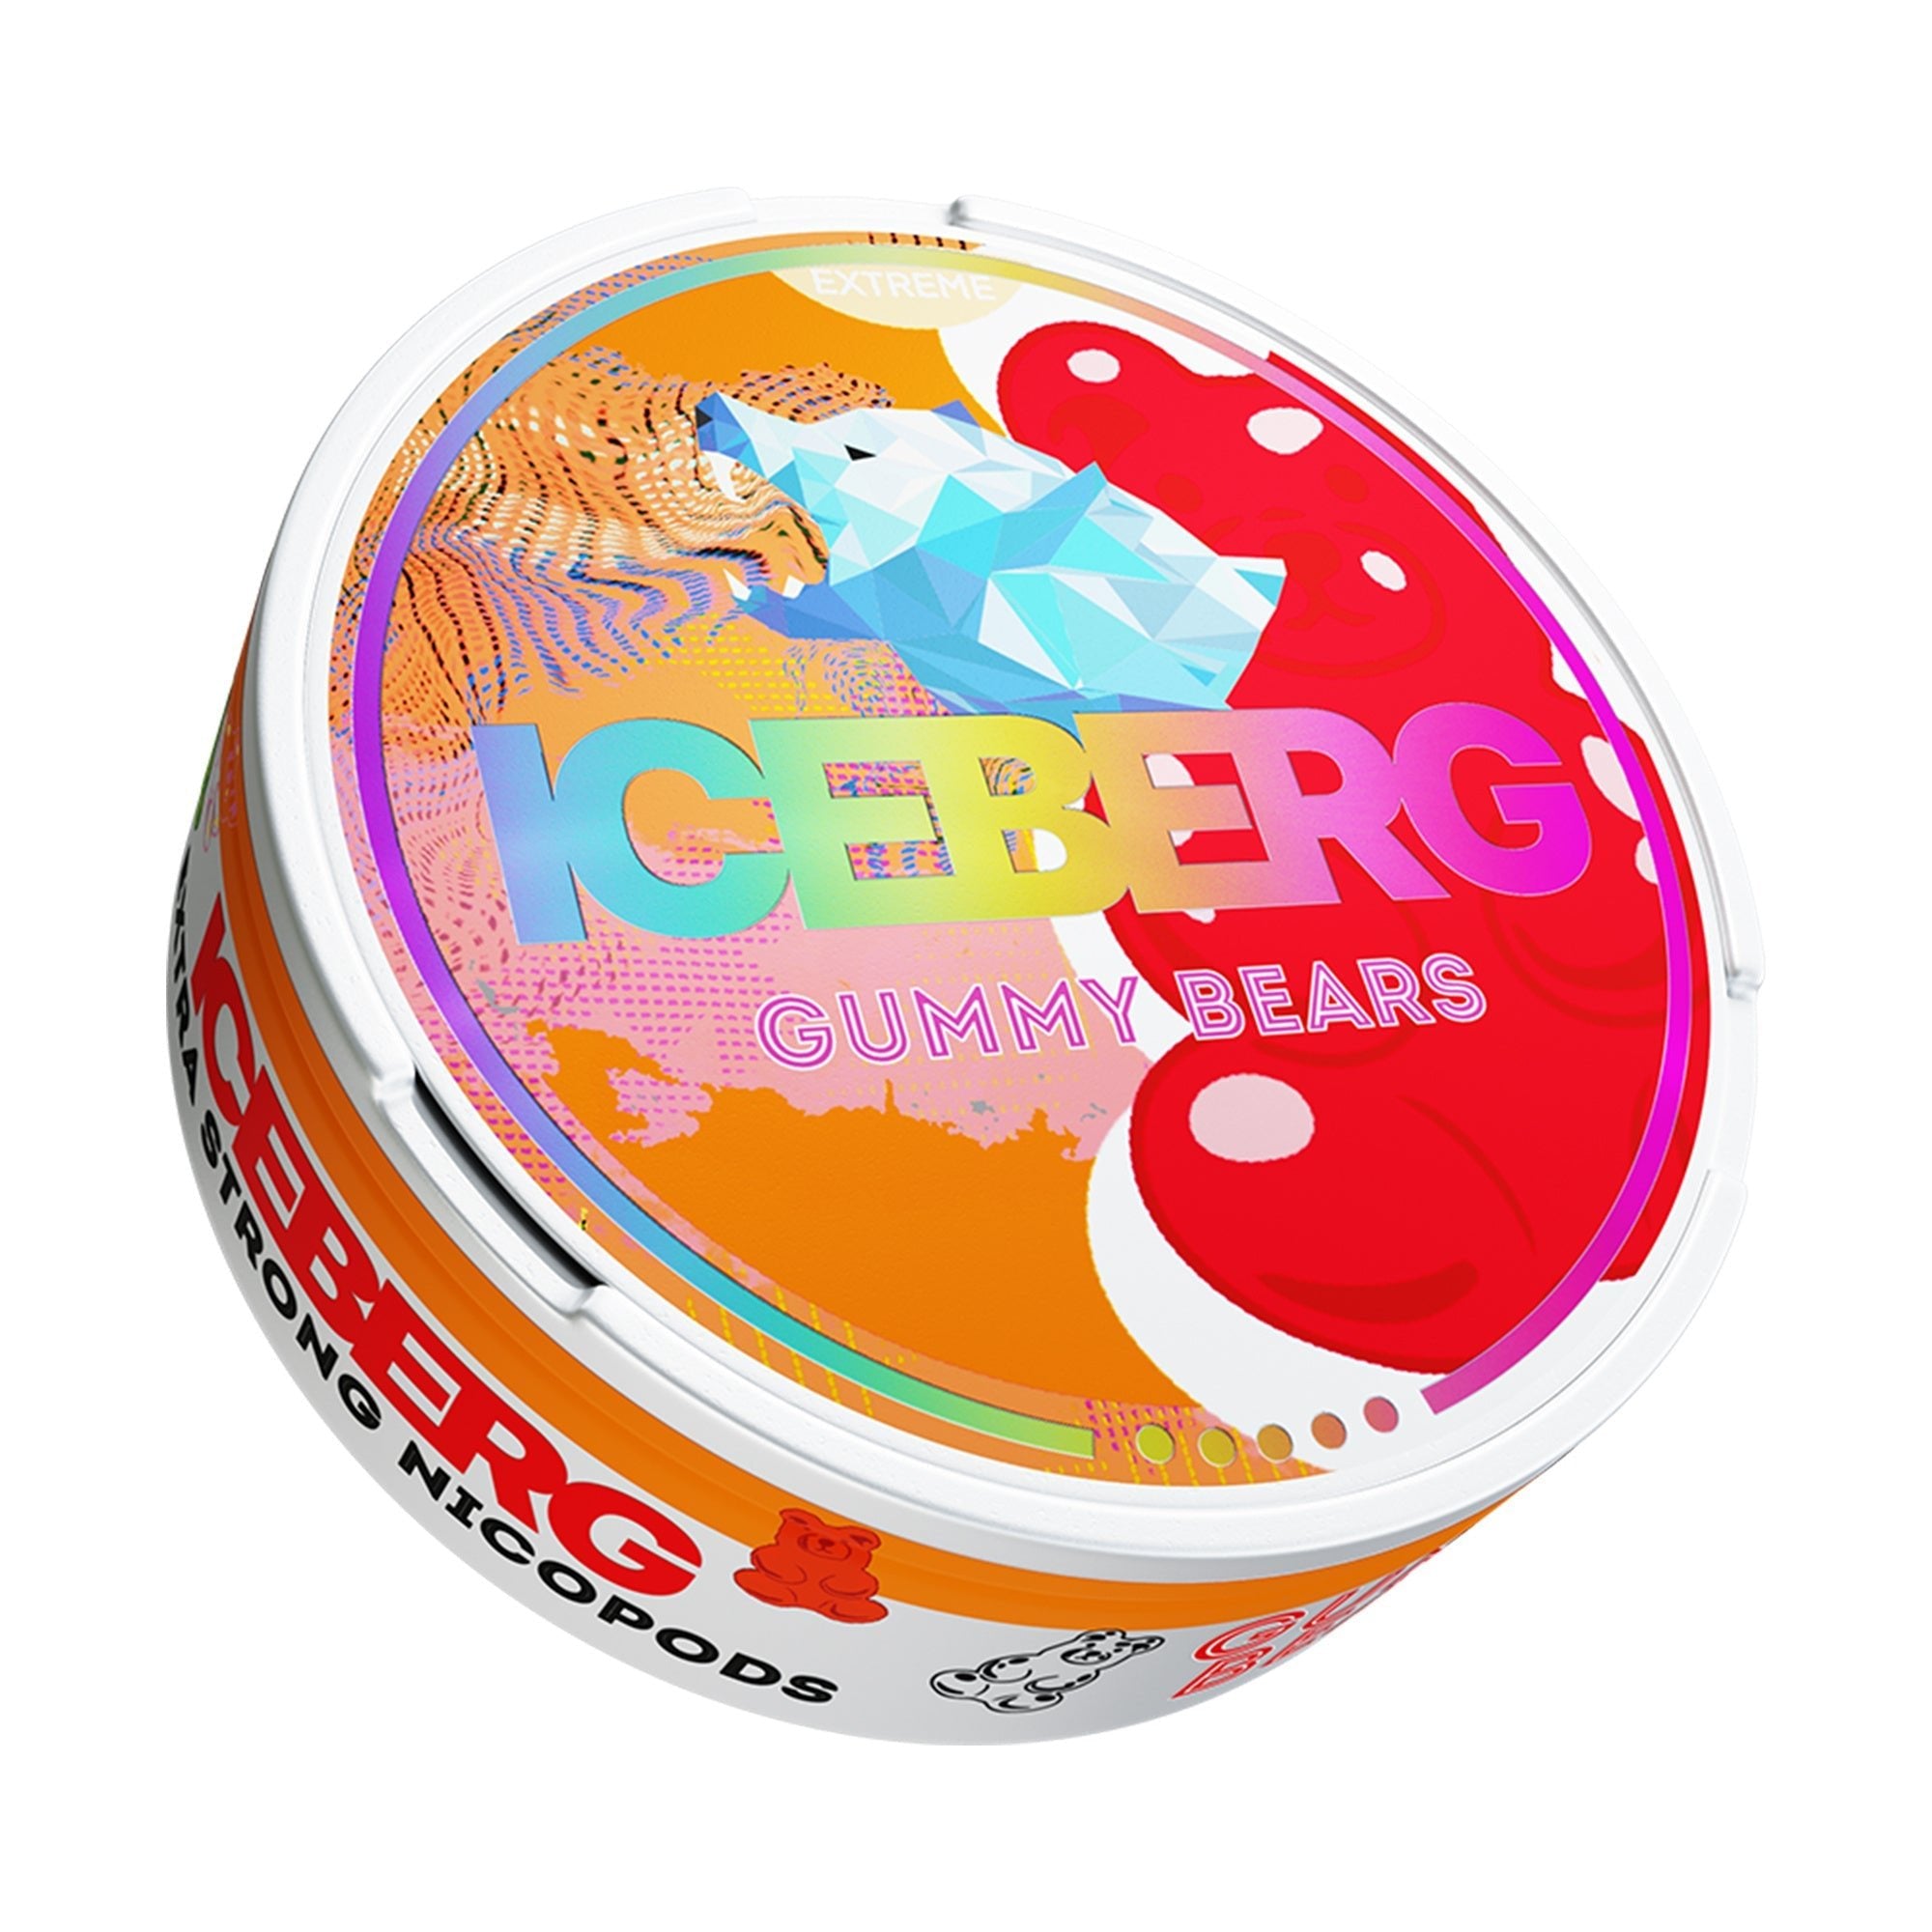 Iceberg Gummy Bears - EUK